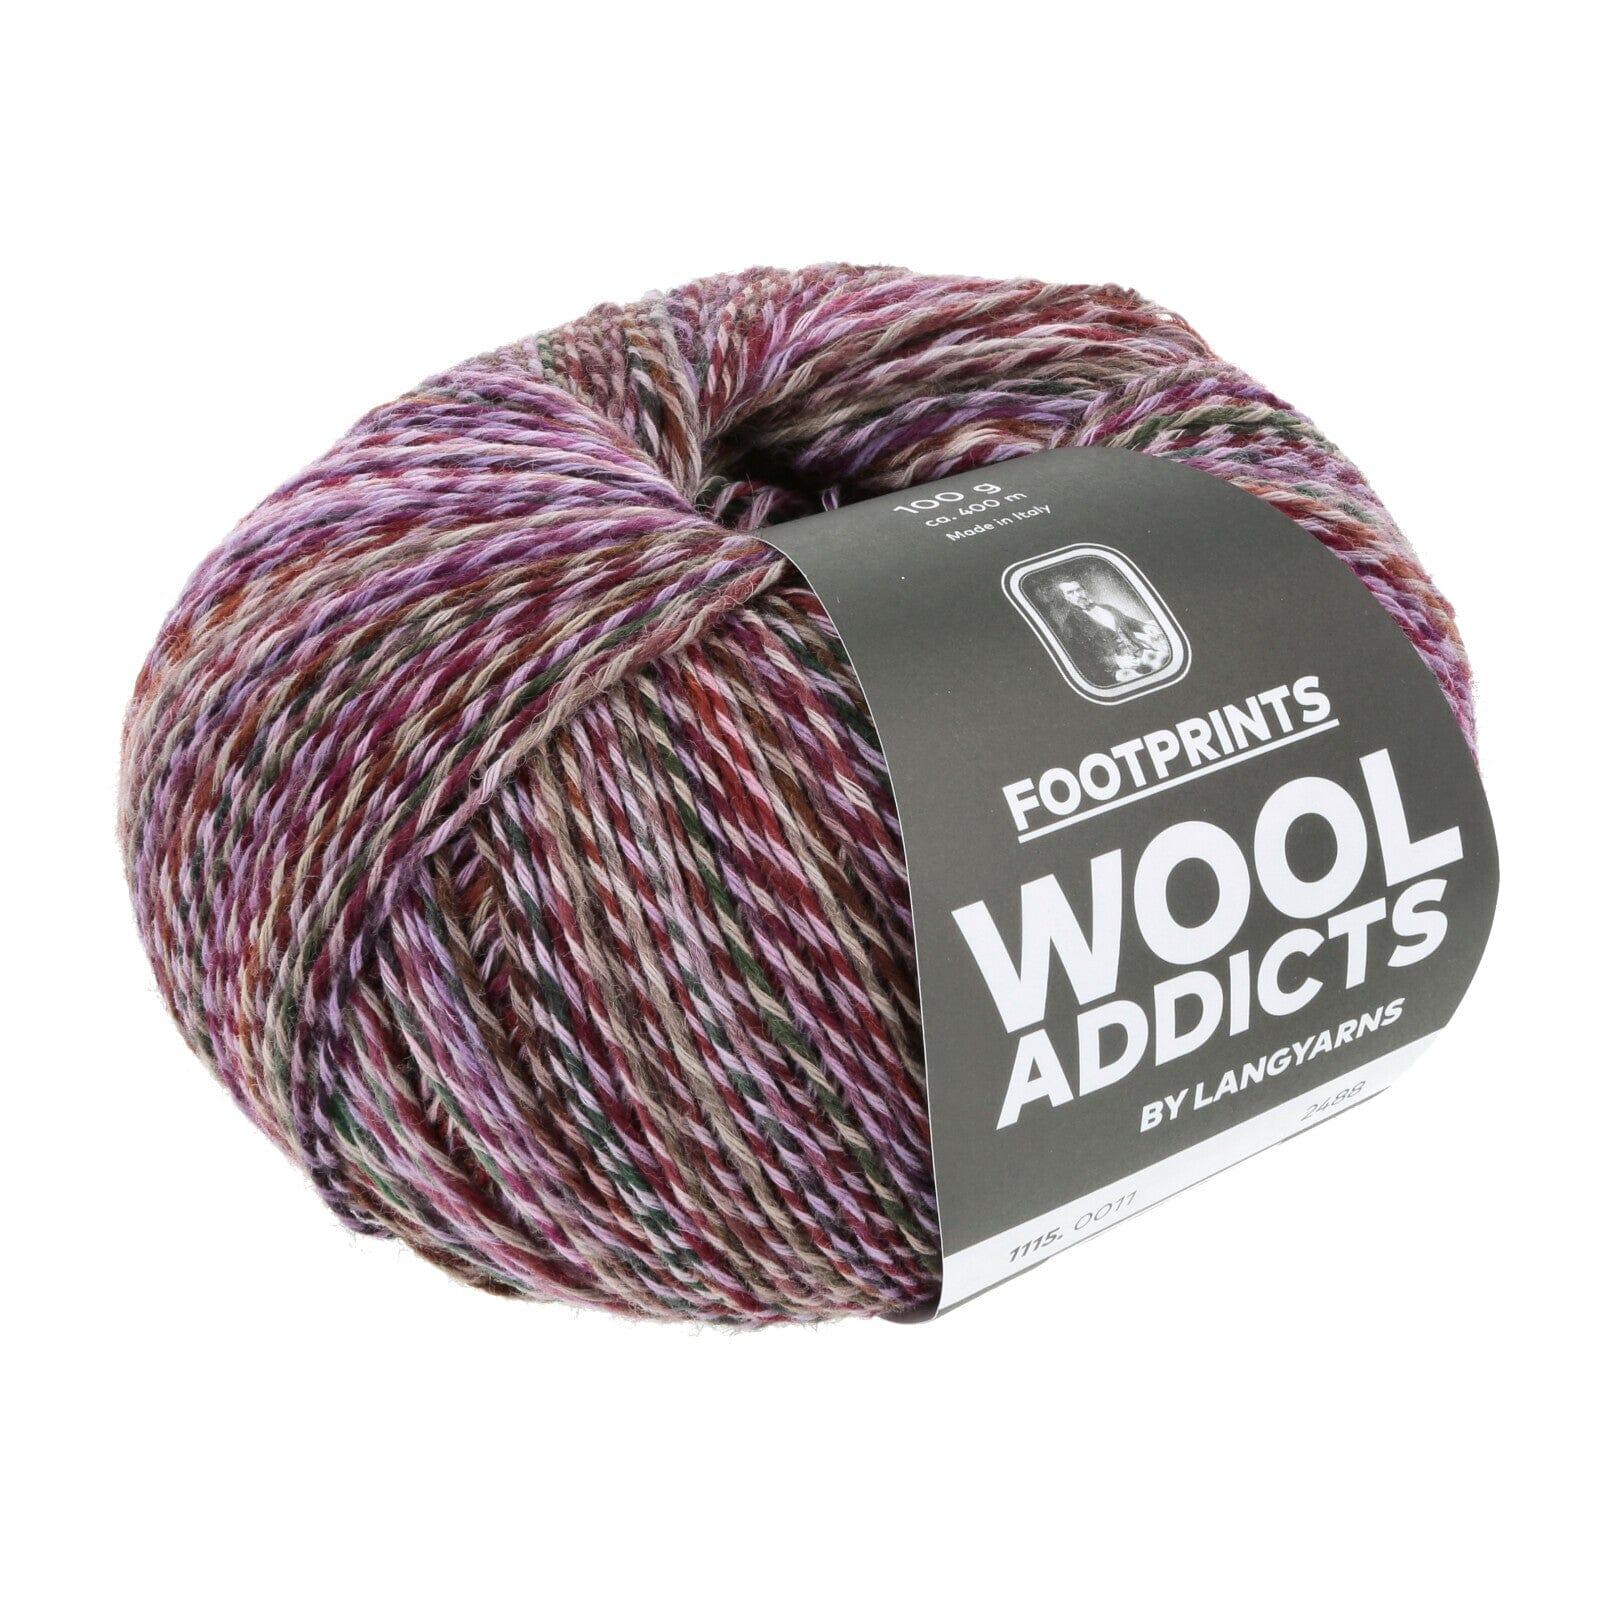 Wool Addicts Footprints - Tangled Yarn